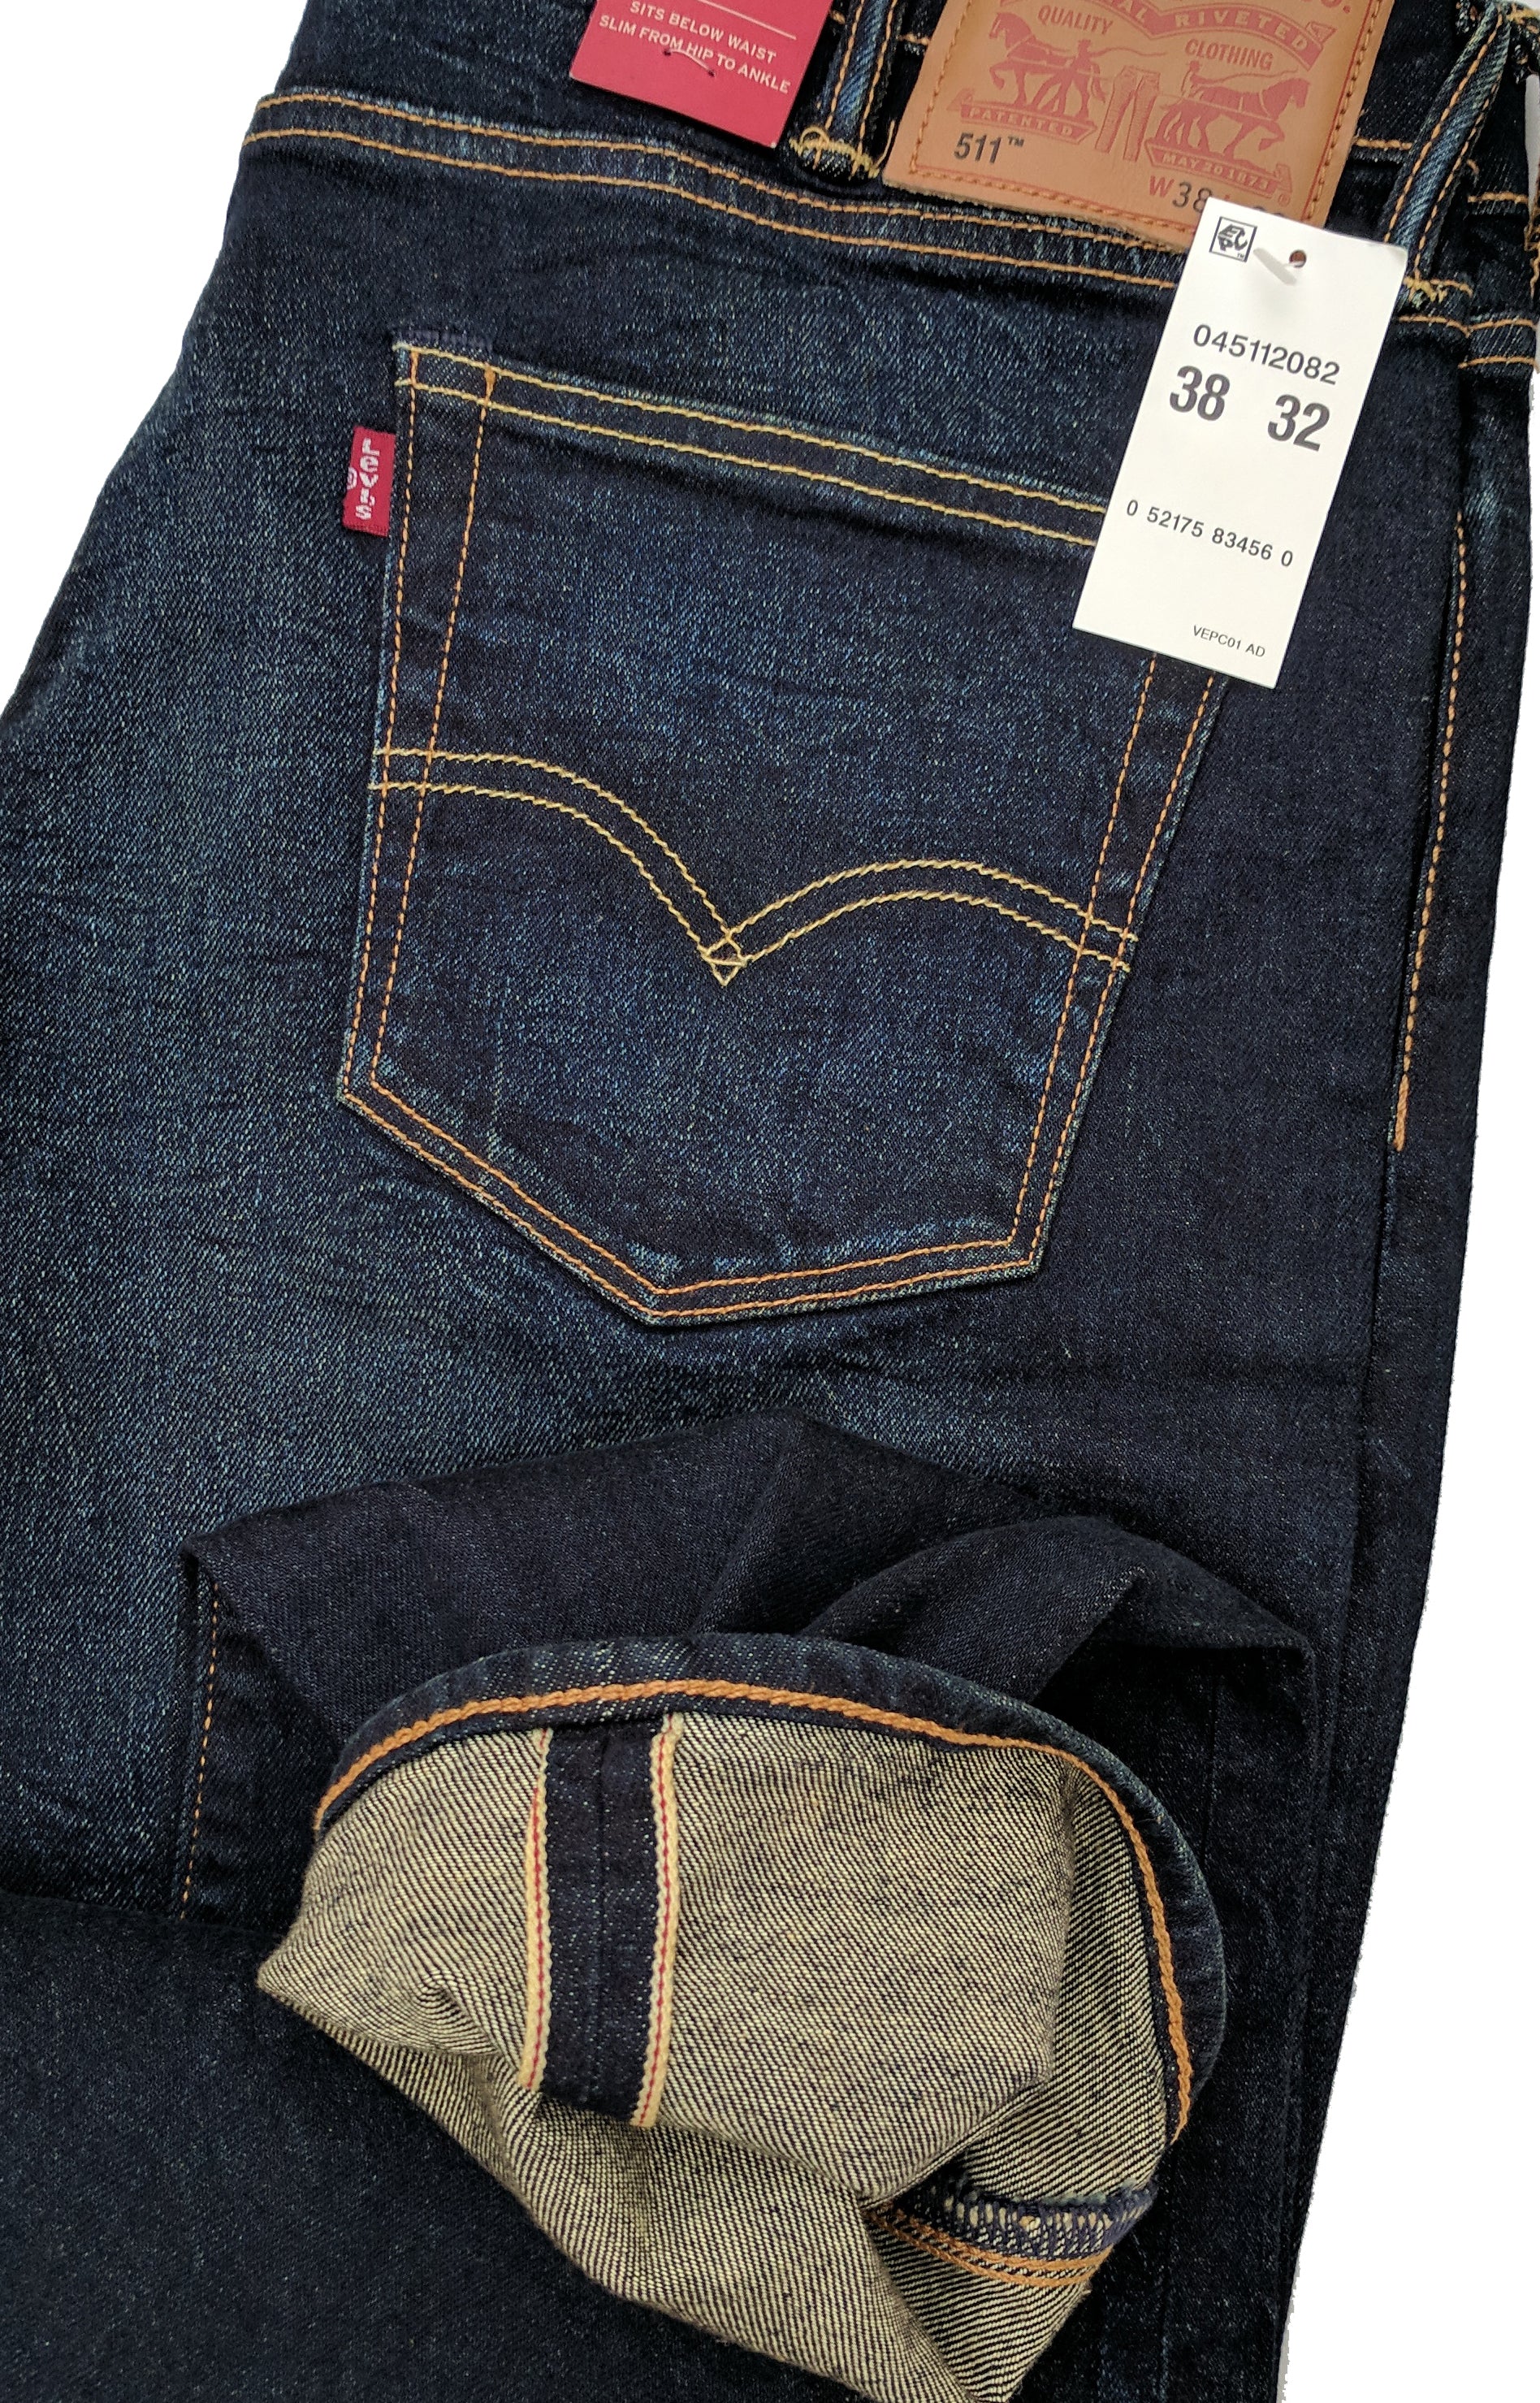 Levi's 511 Slim Fit Jeans - Men's 